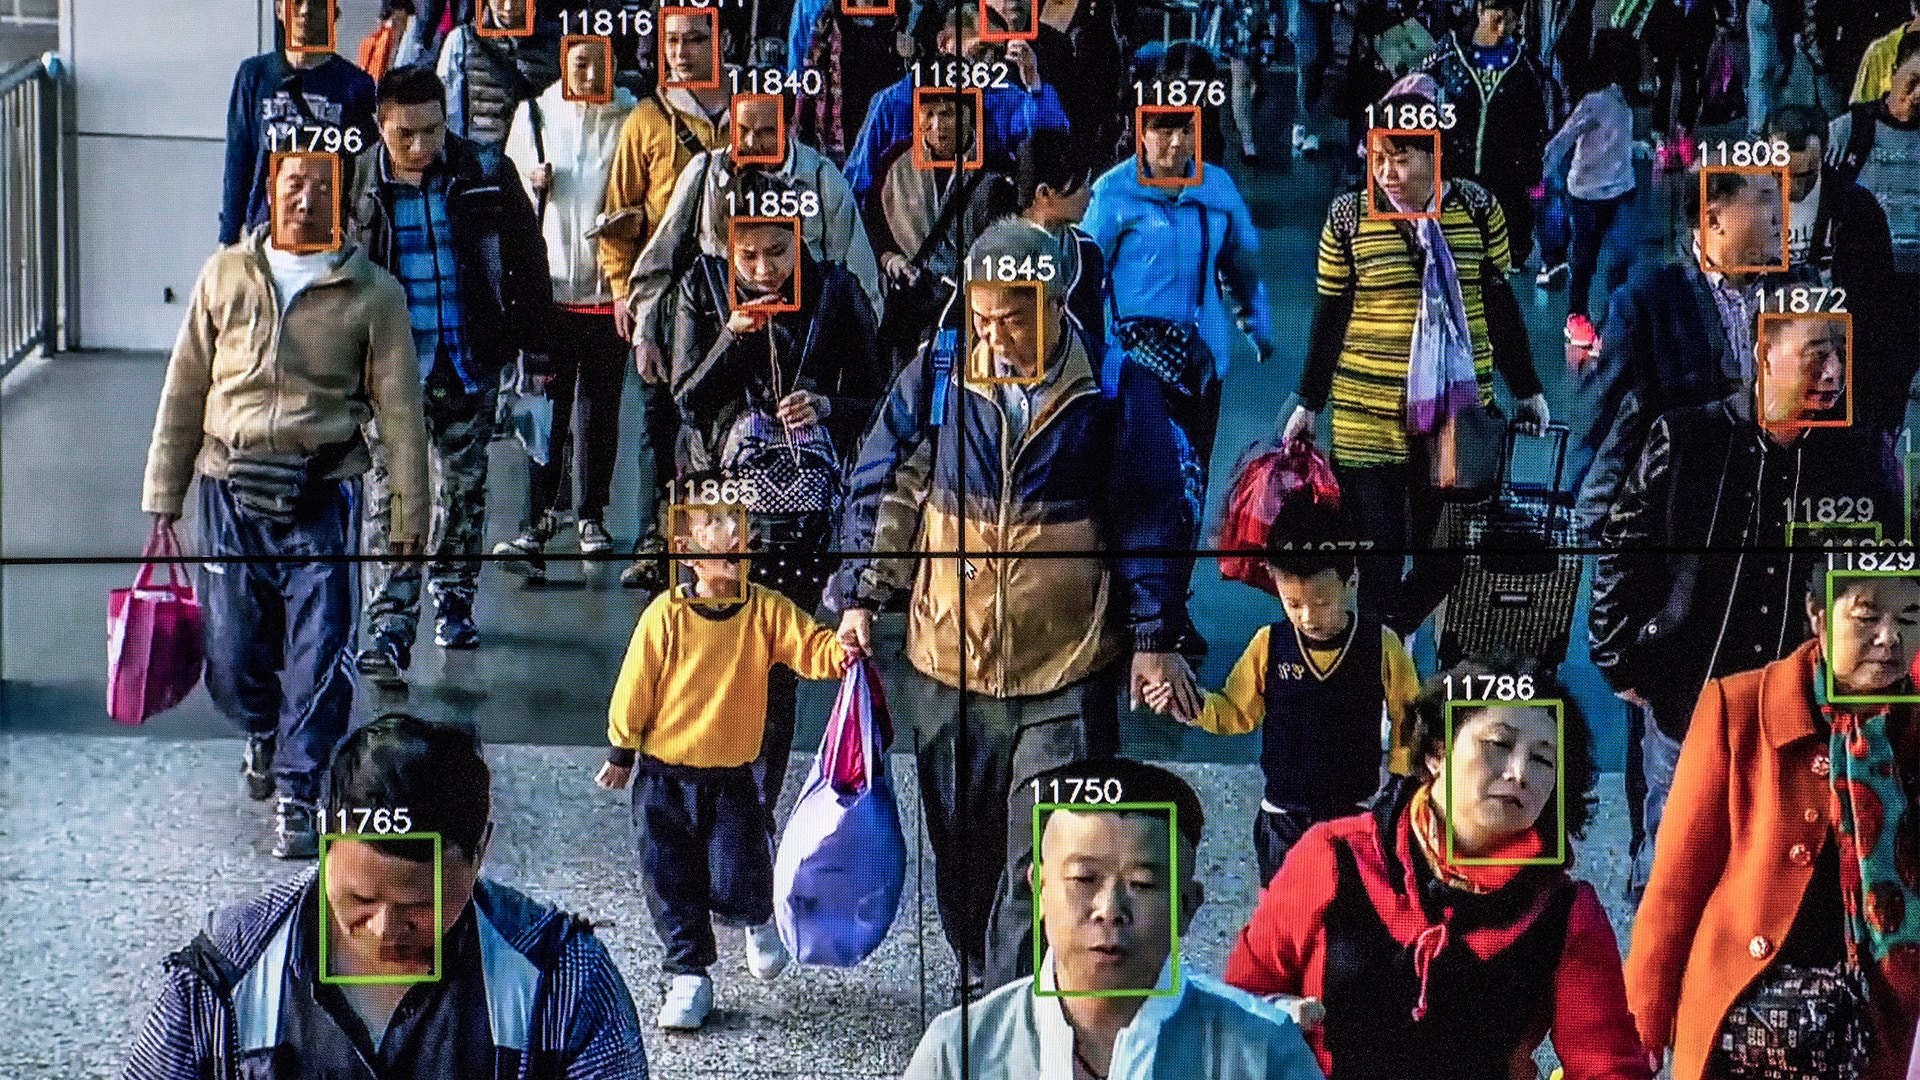 Trung Quốc buộc tất cả người dân phải cung cấp dữ liệu nhận diện khuôn mặt - Ảnh 1.